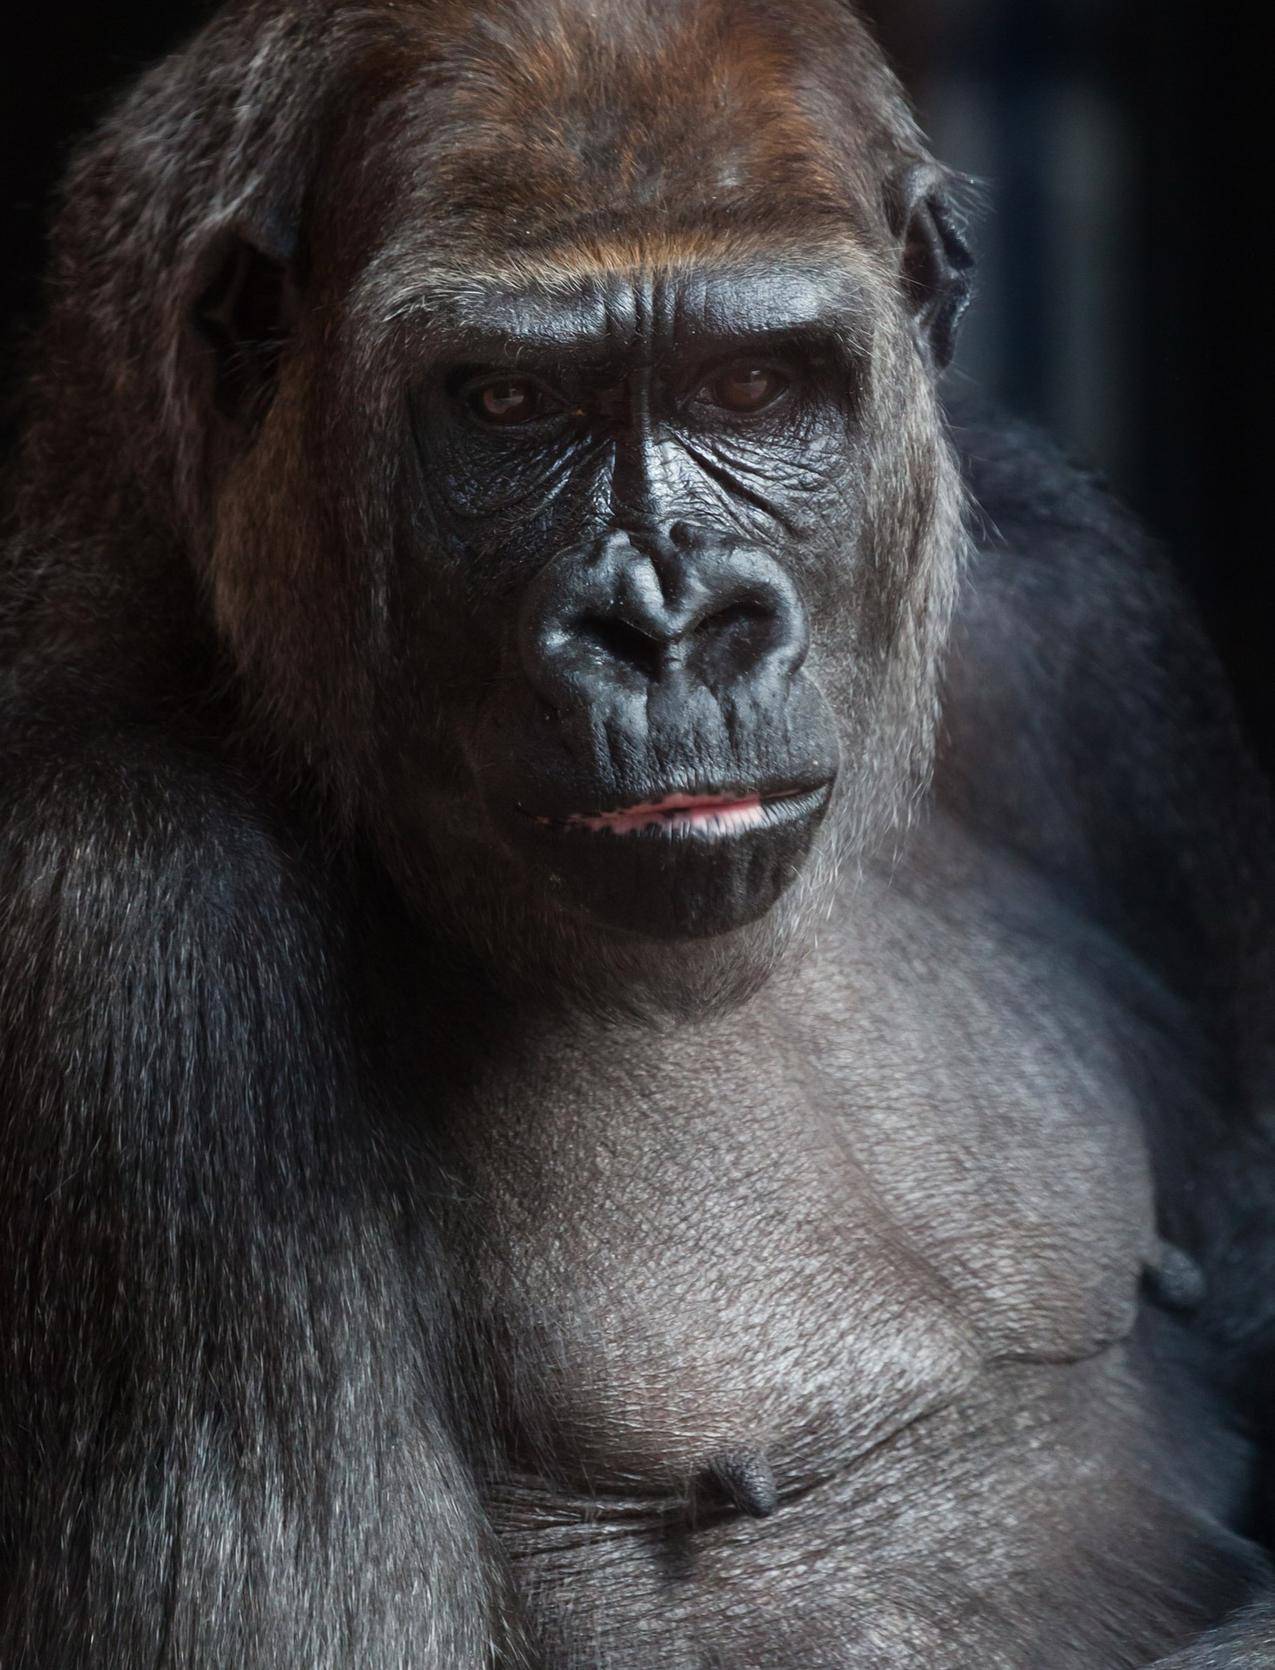 Bonobo : Fiche descriptive complète avec photos - Instinct animal